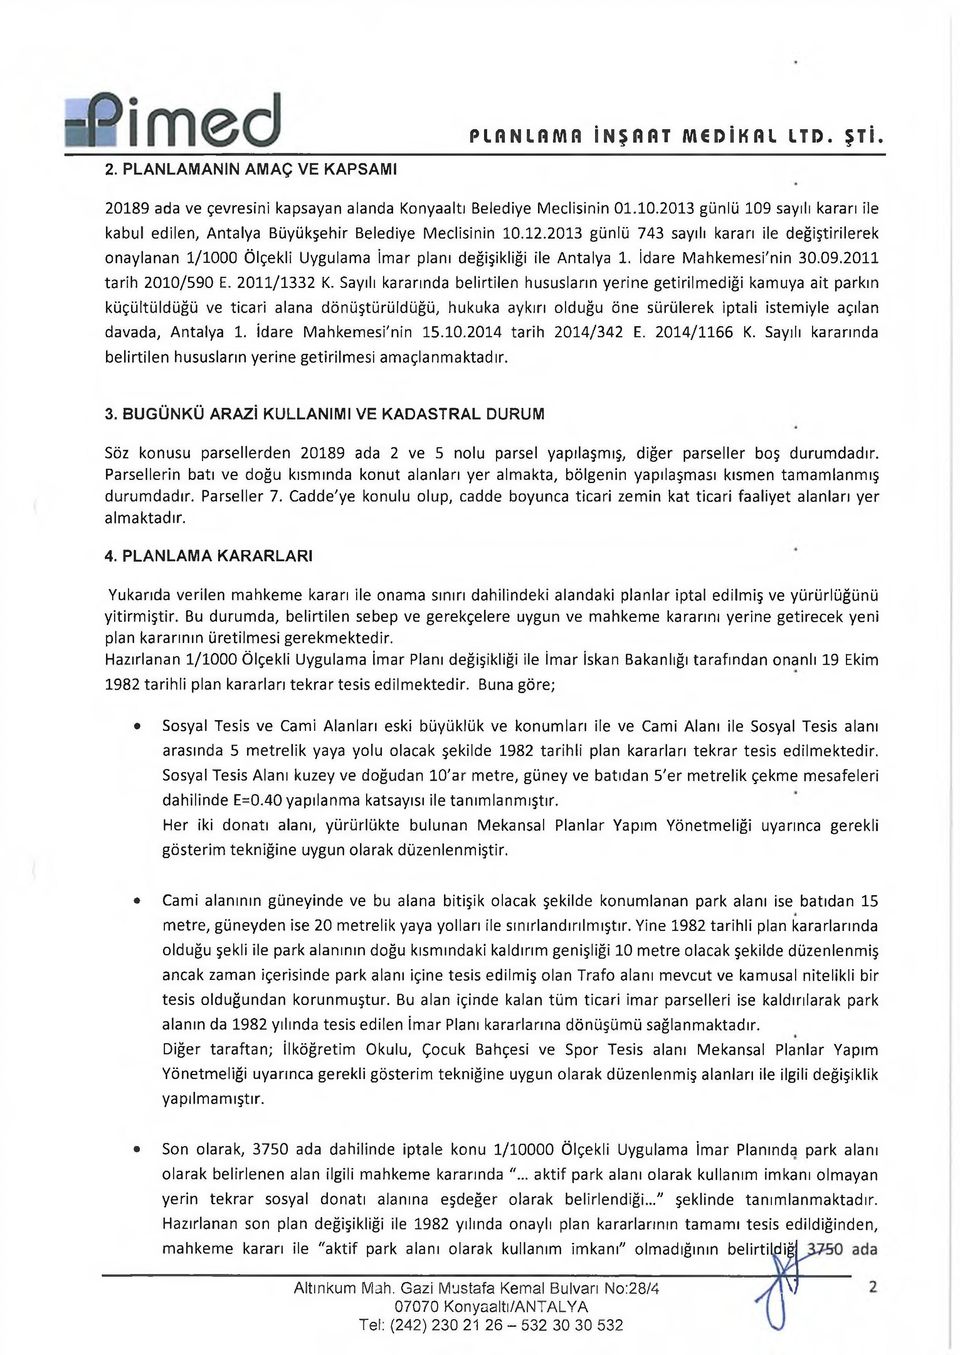 2013 günlü 743 sayılı kararı ile değiştirilerek onaylanan 1/1000 Ölçekli Uygulama İmar planı değişikliği ile Antalya 1. İdare Mahkemesi'nin 30.09.2011 tarih 2010/590 E. 2011/1332 K.